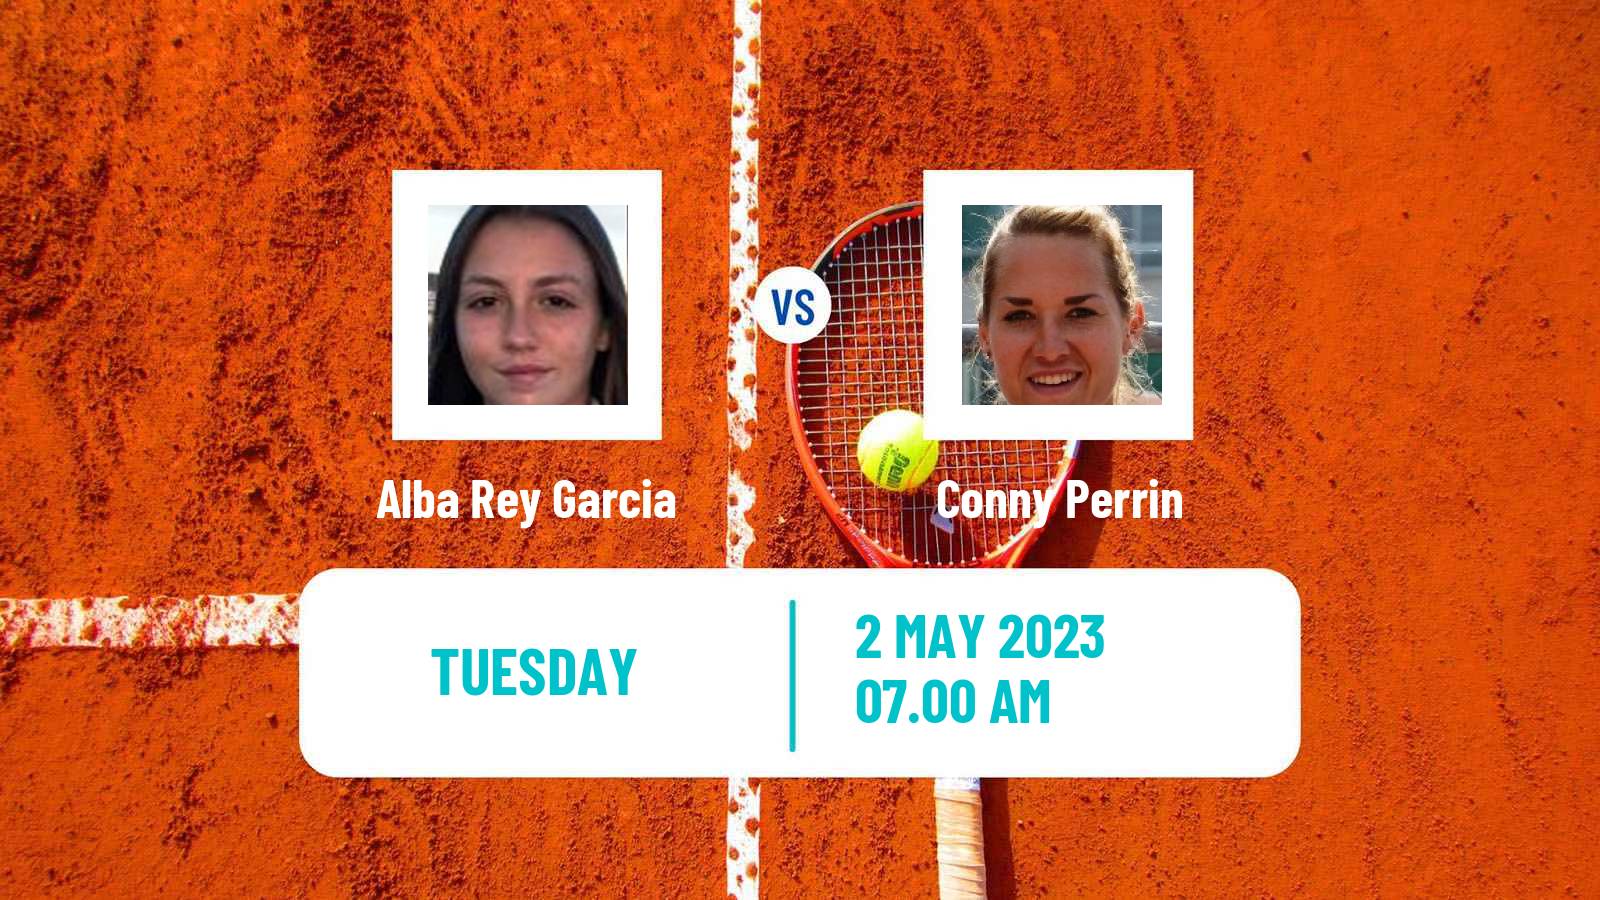 Tennis ITF Tournaments Alba Rey Garcia - Conny Perrin